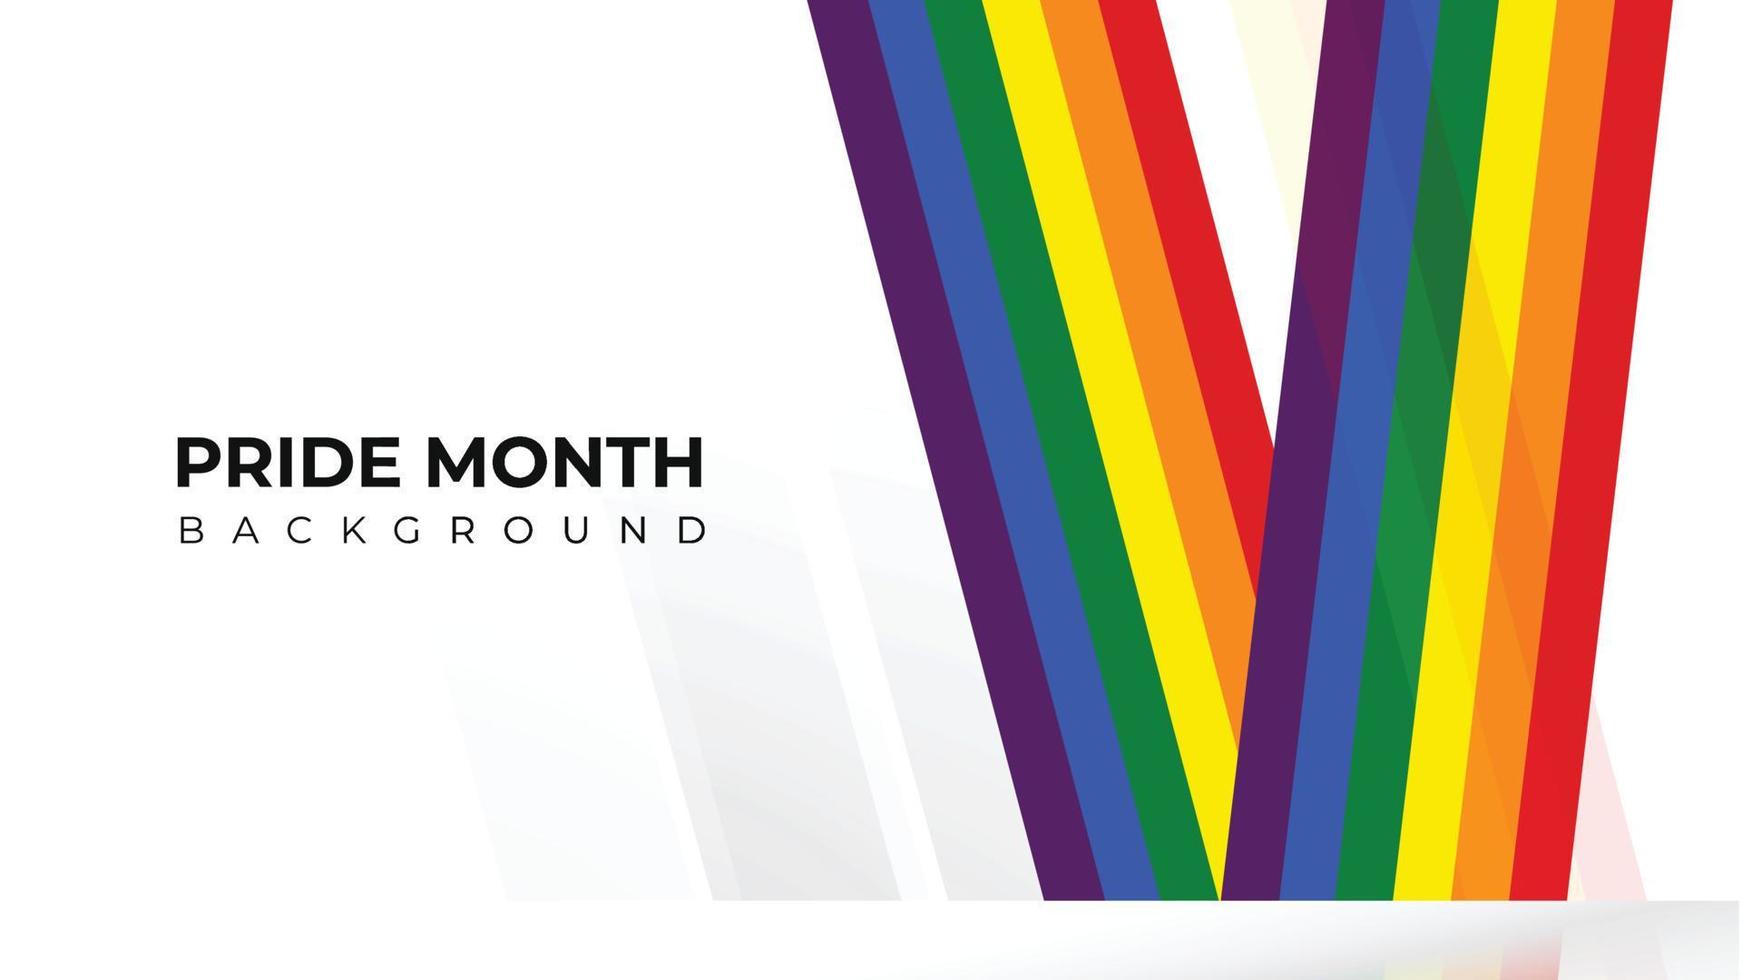 trots maand banner, trots maand achtergrond op trots maand kleurrijke regenboog concept lgbt vector